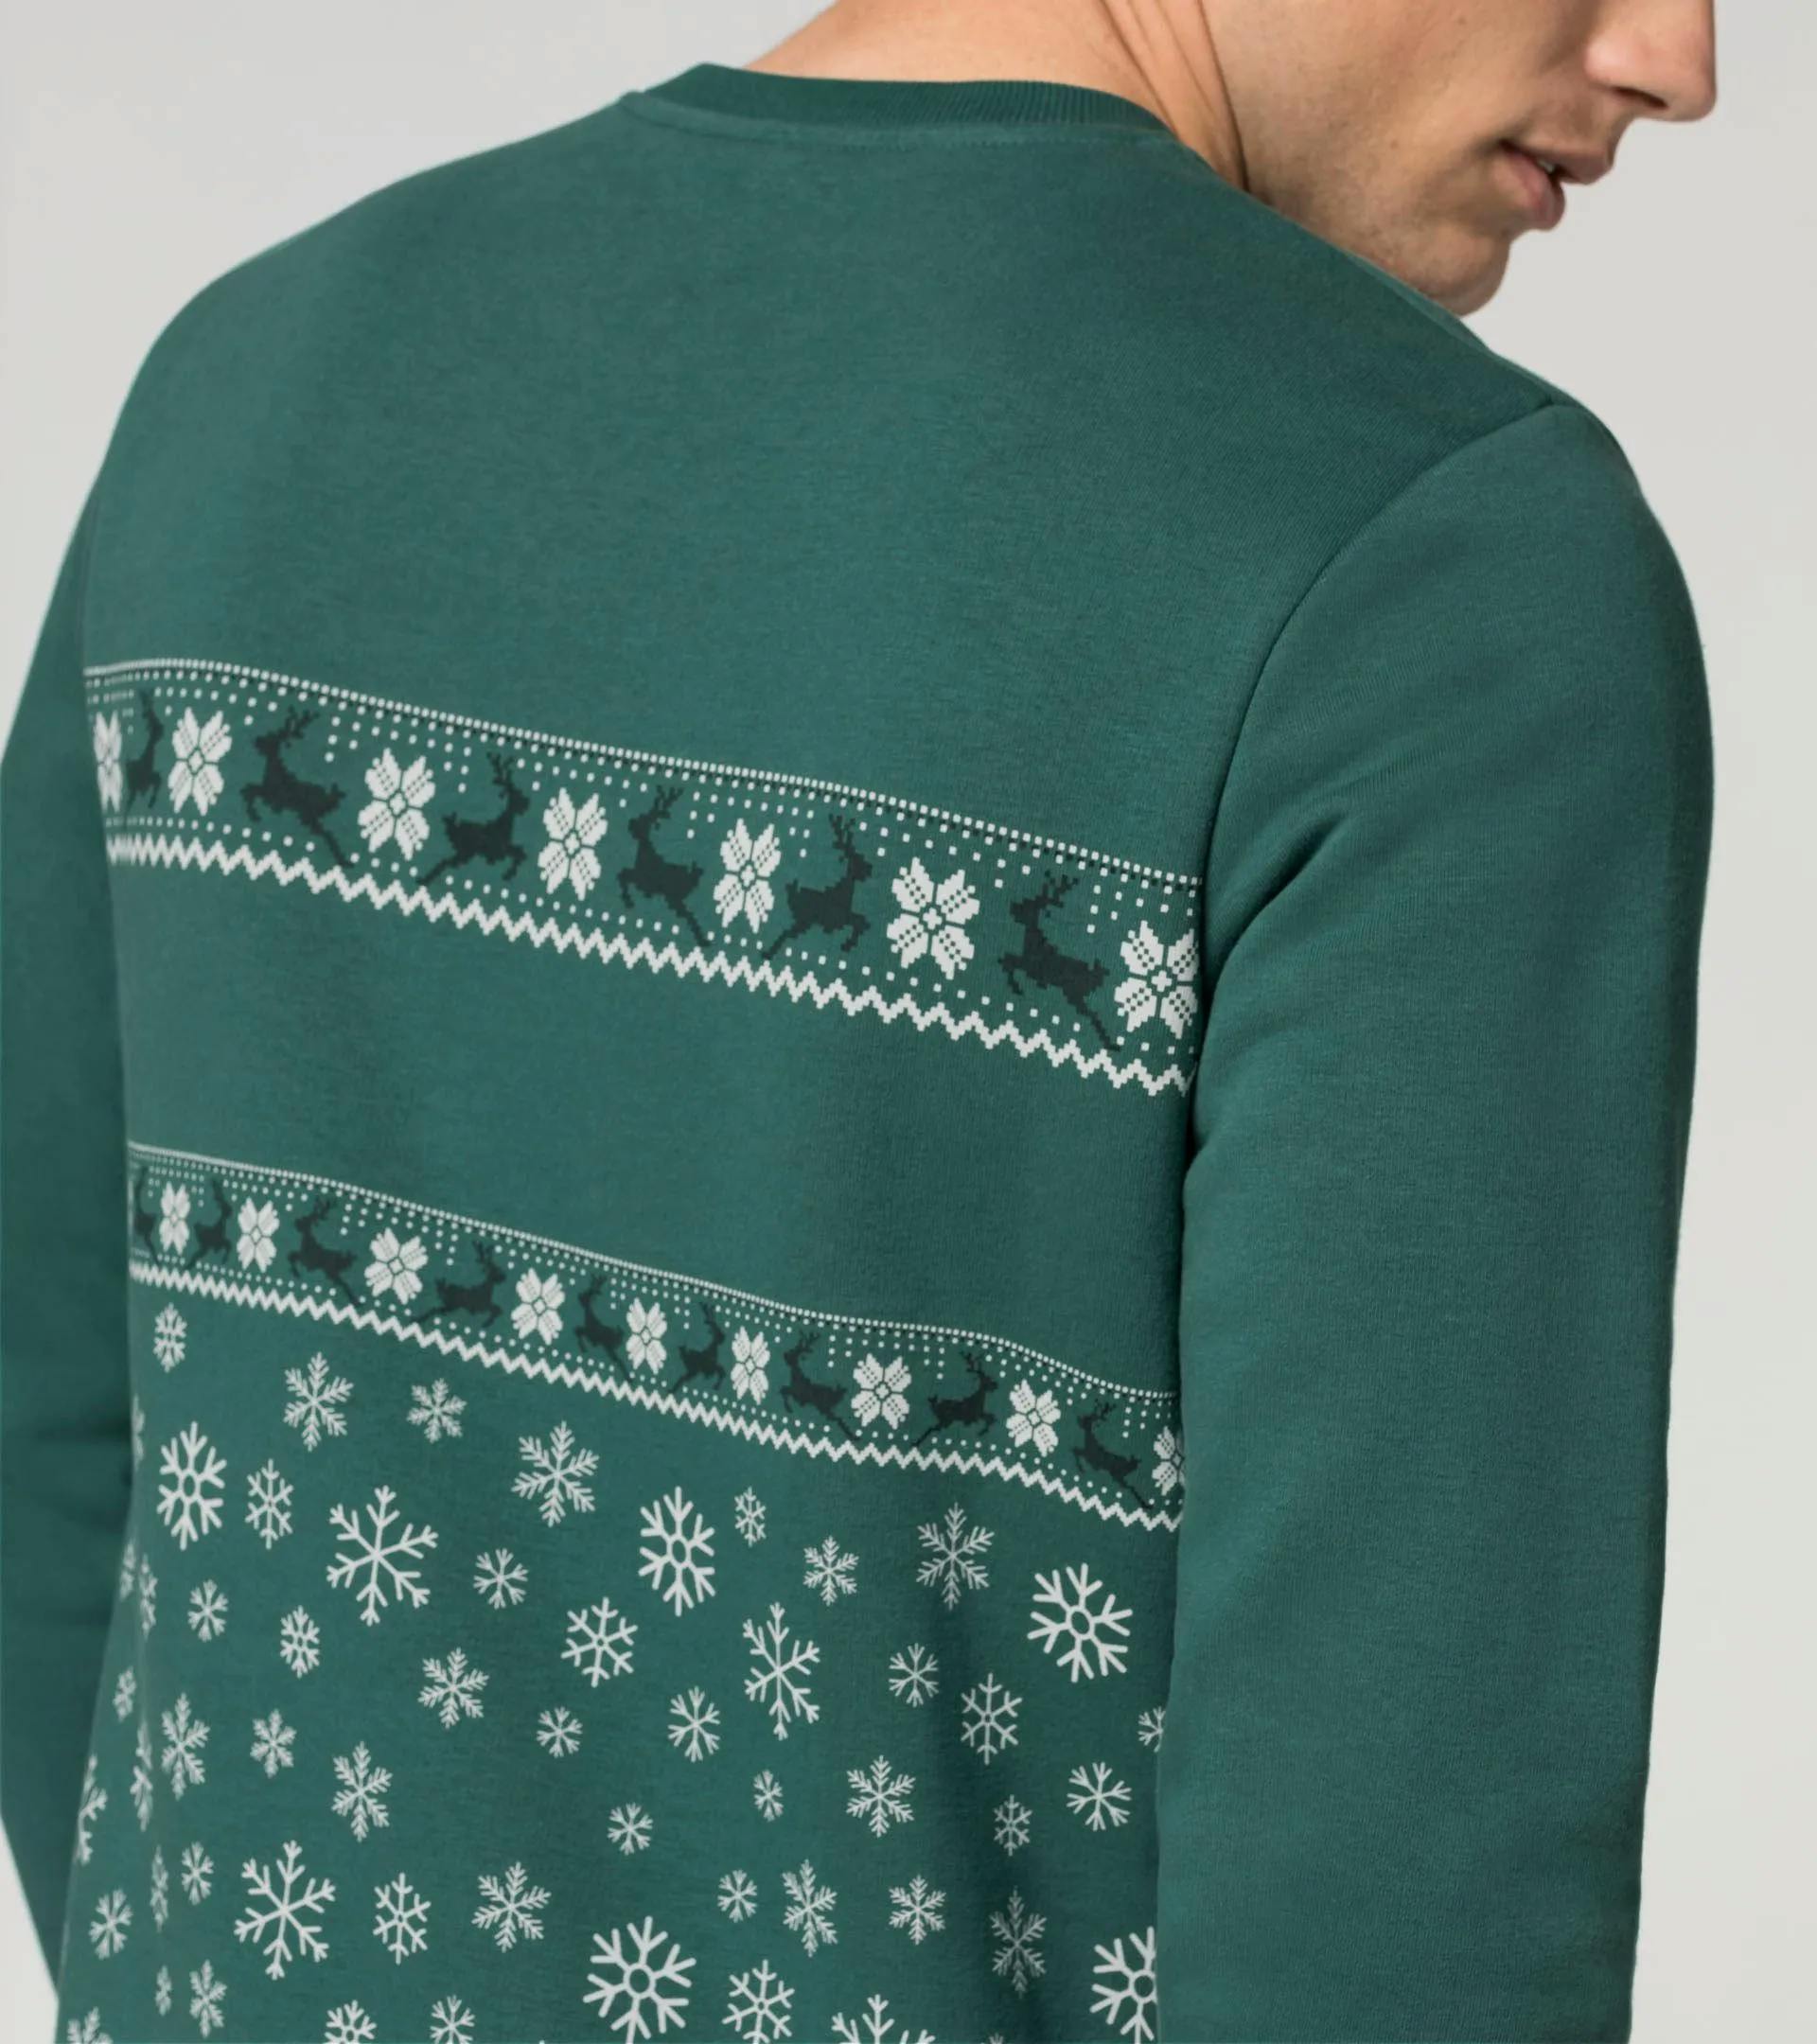 Sweatshirt Unisex – Christmas 4